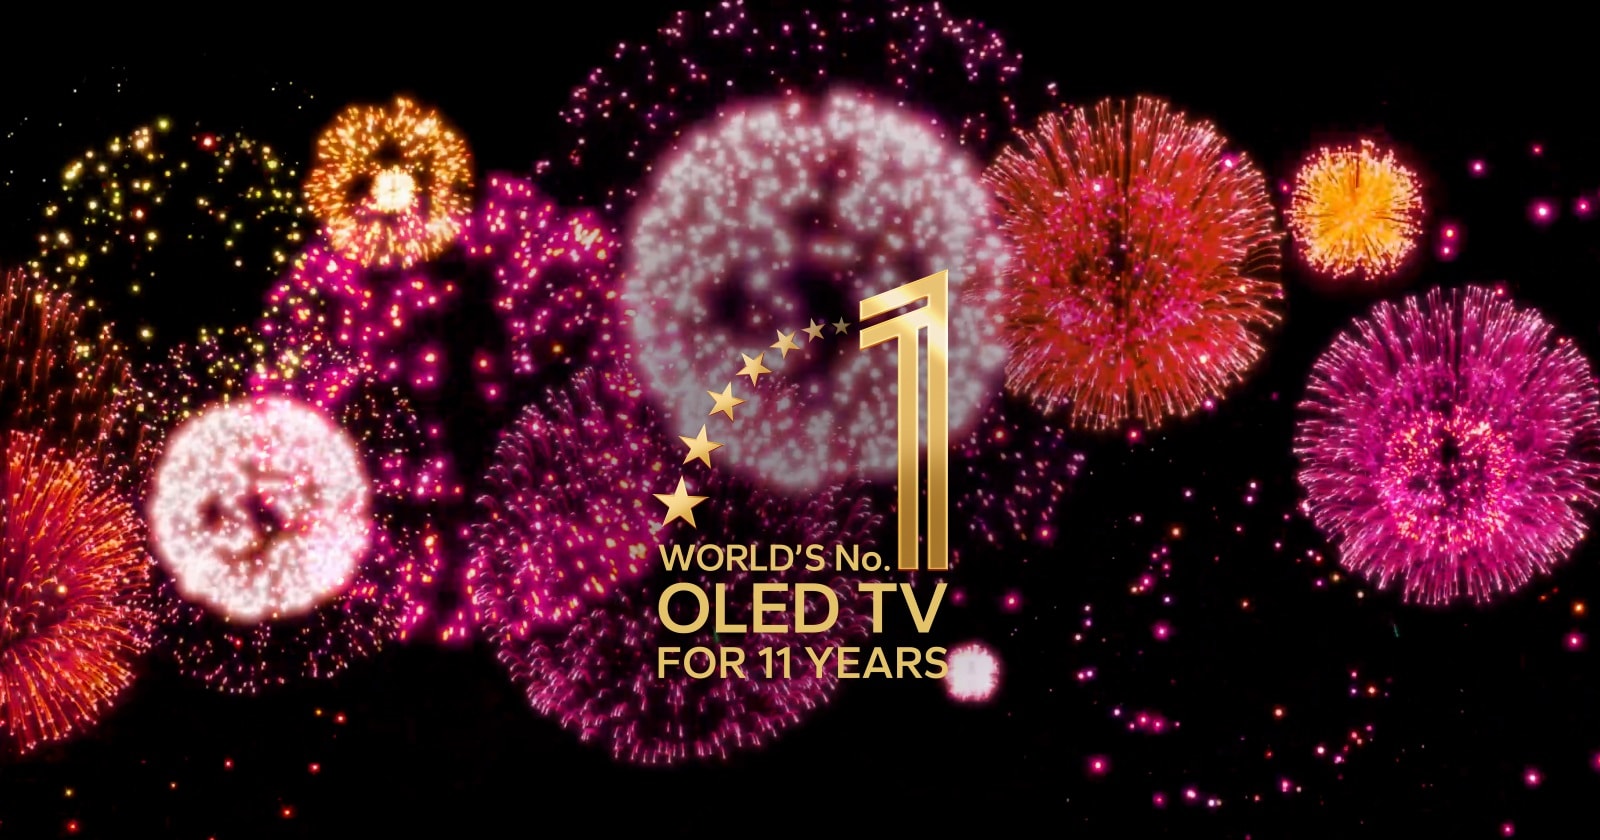 Videozapis prikazuje amblem 11 godina kao najbolji OLED TV na svijetu koji se postepeno pojavljuje na crnoj pozadini s ljubičastim, ružičastim i narančastim vatrometom. 